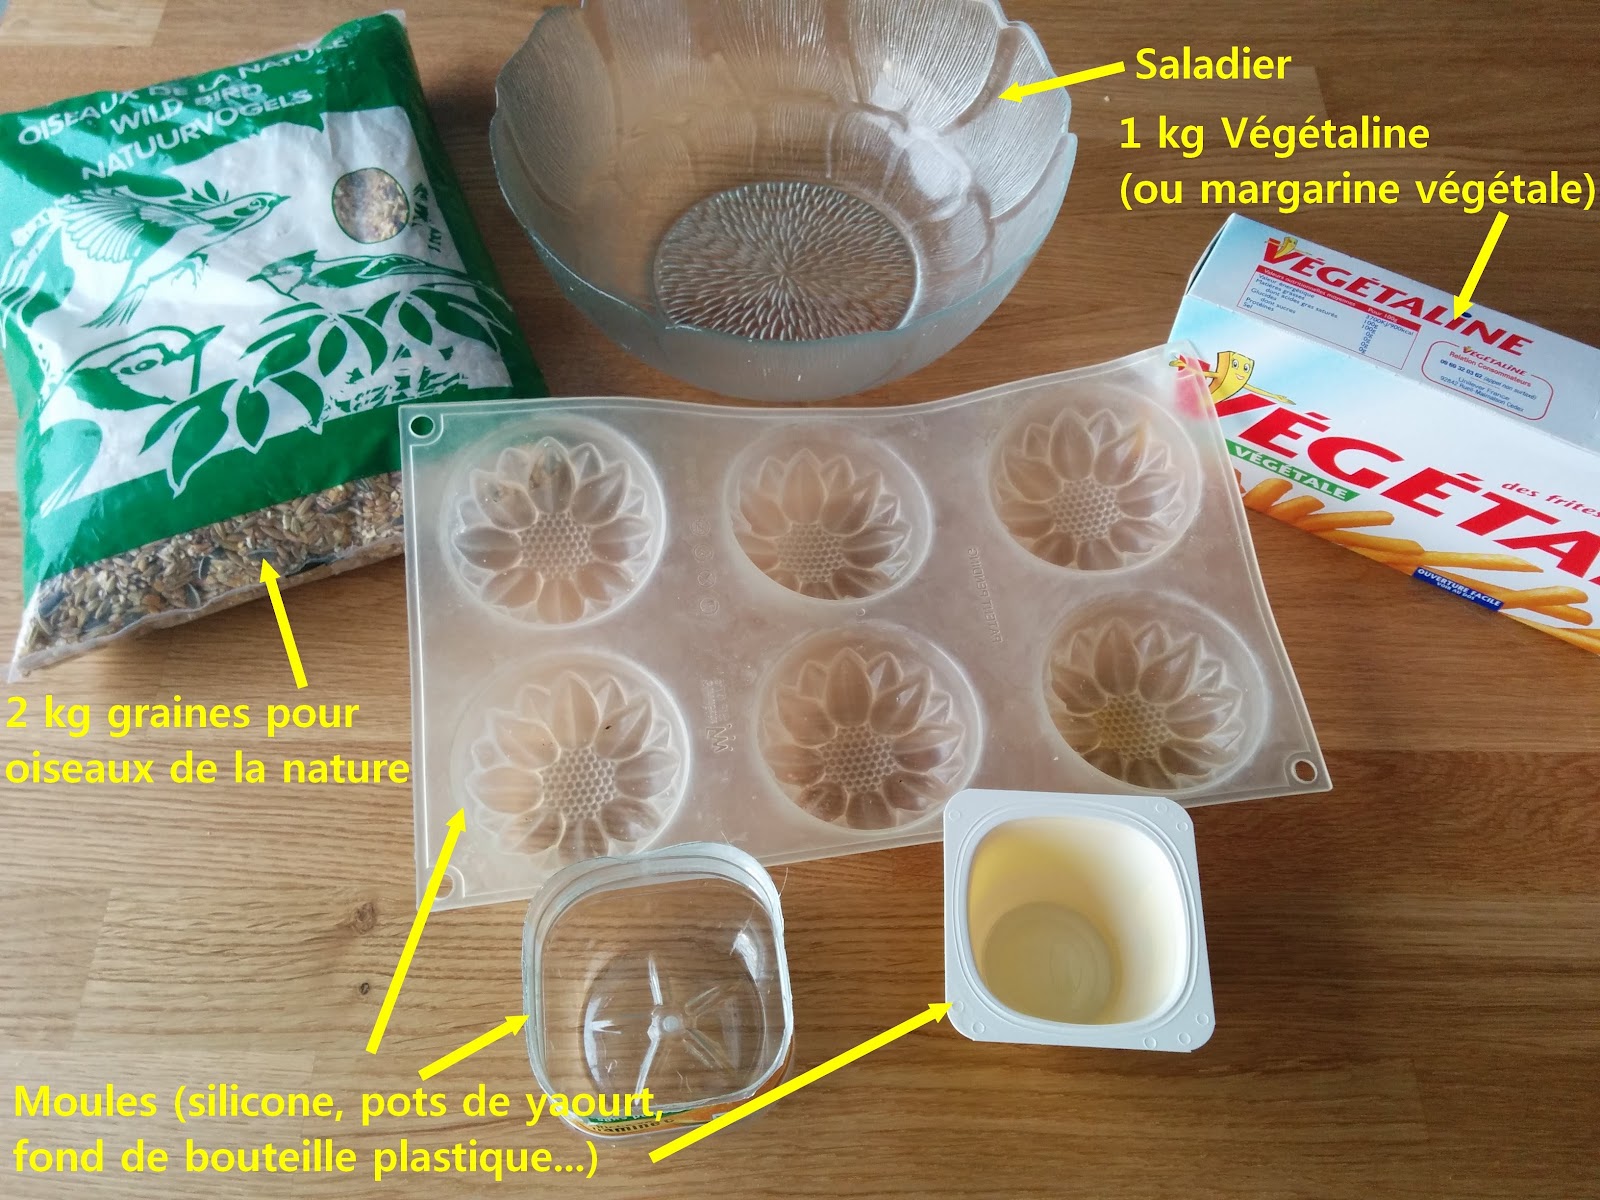 Voici comment fabriquer des boules de graisse pour nourrir les